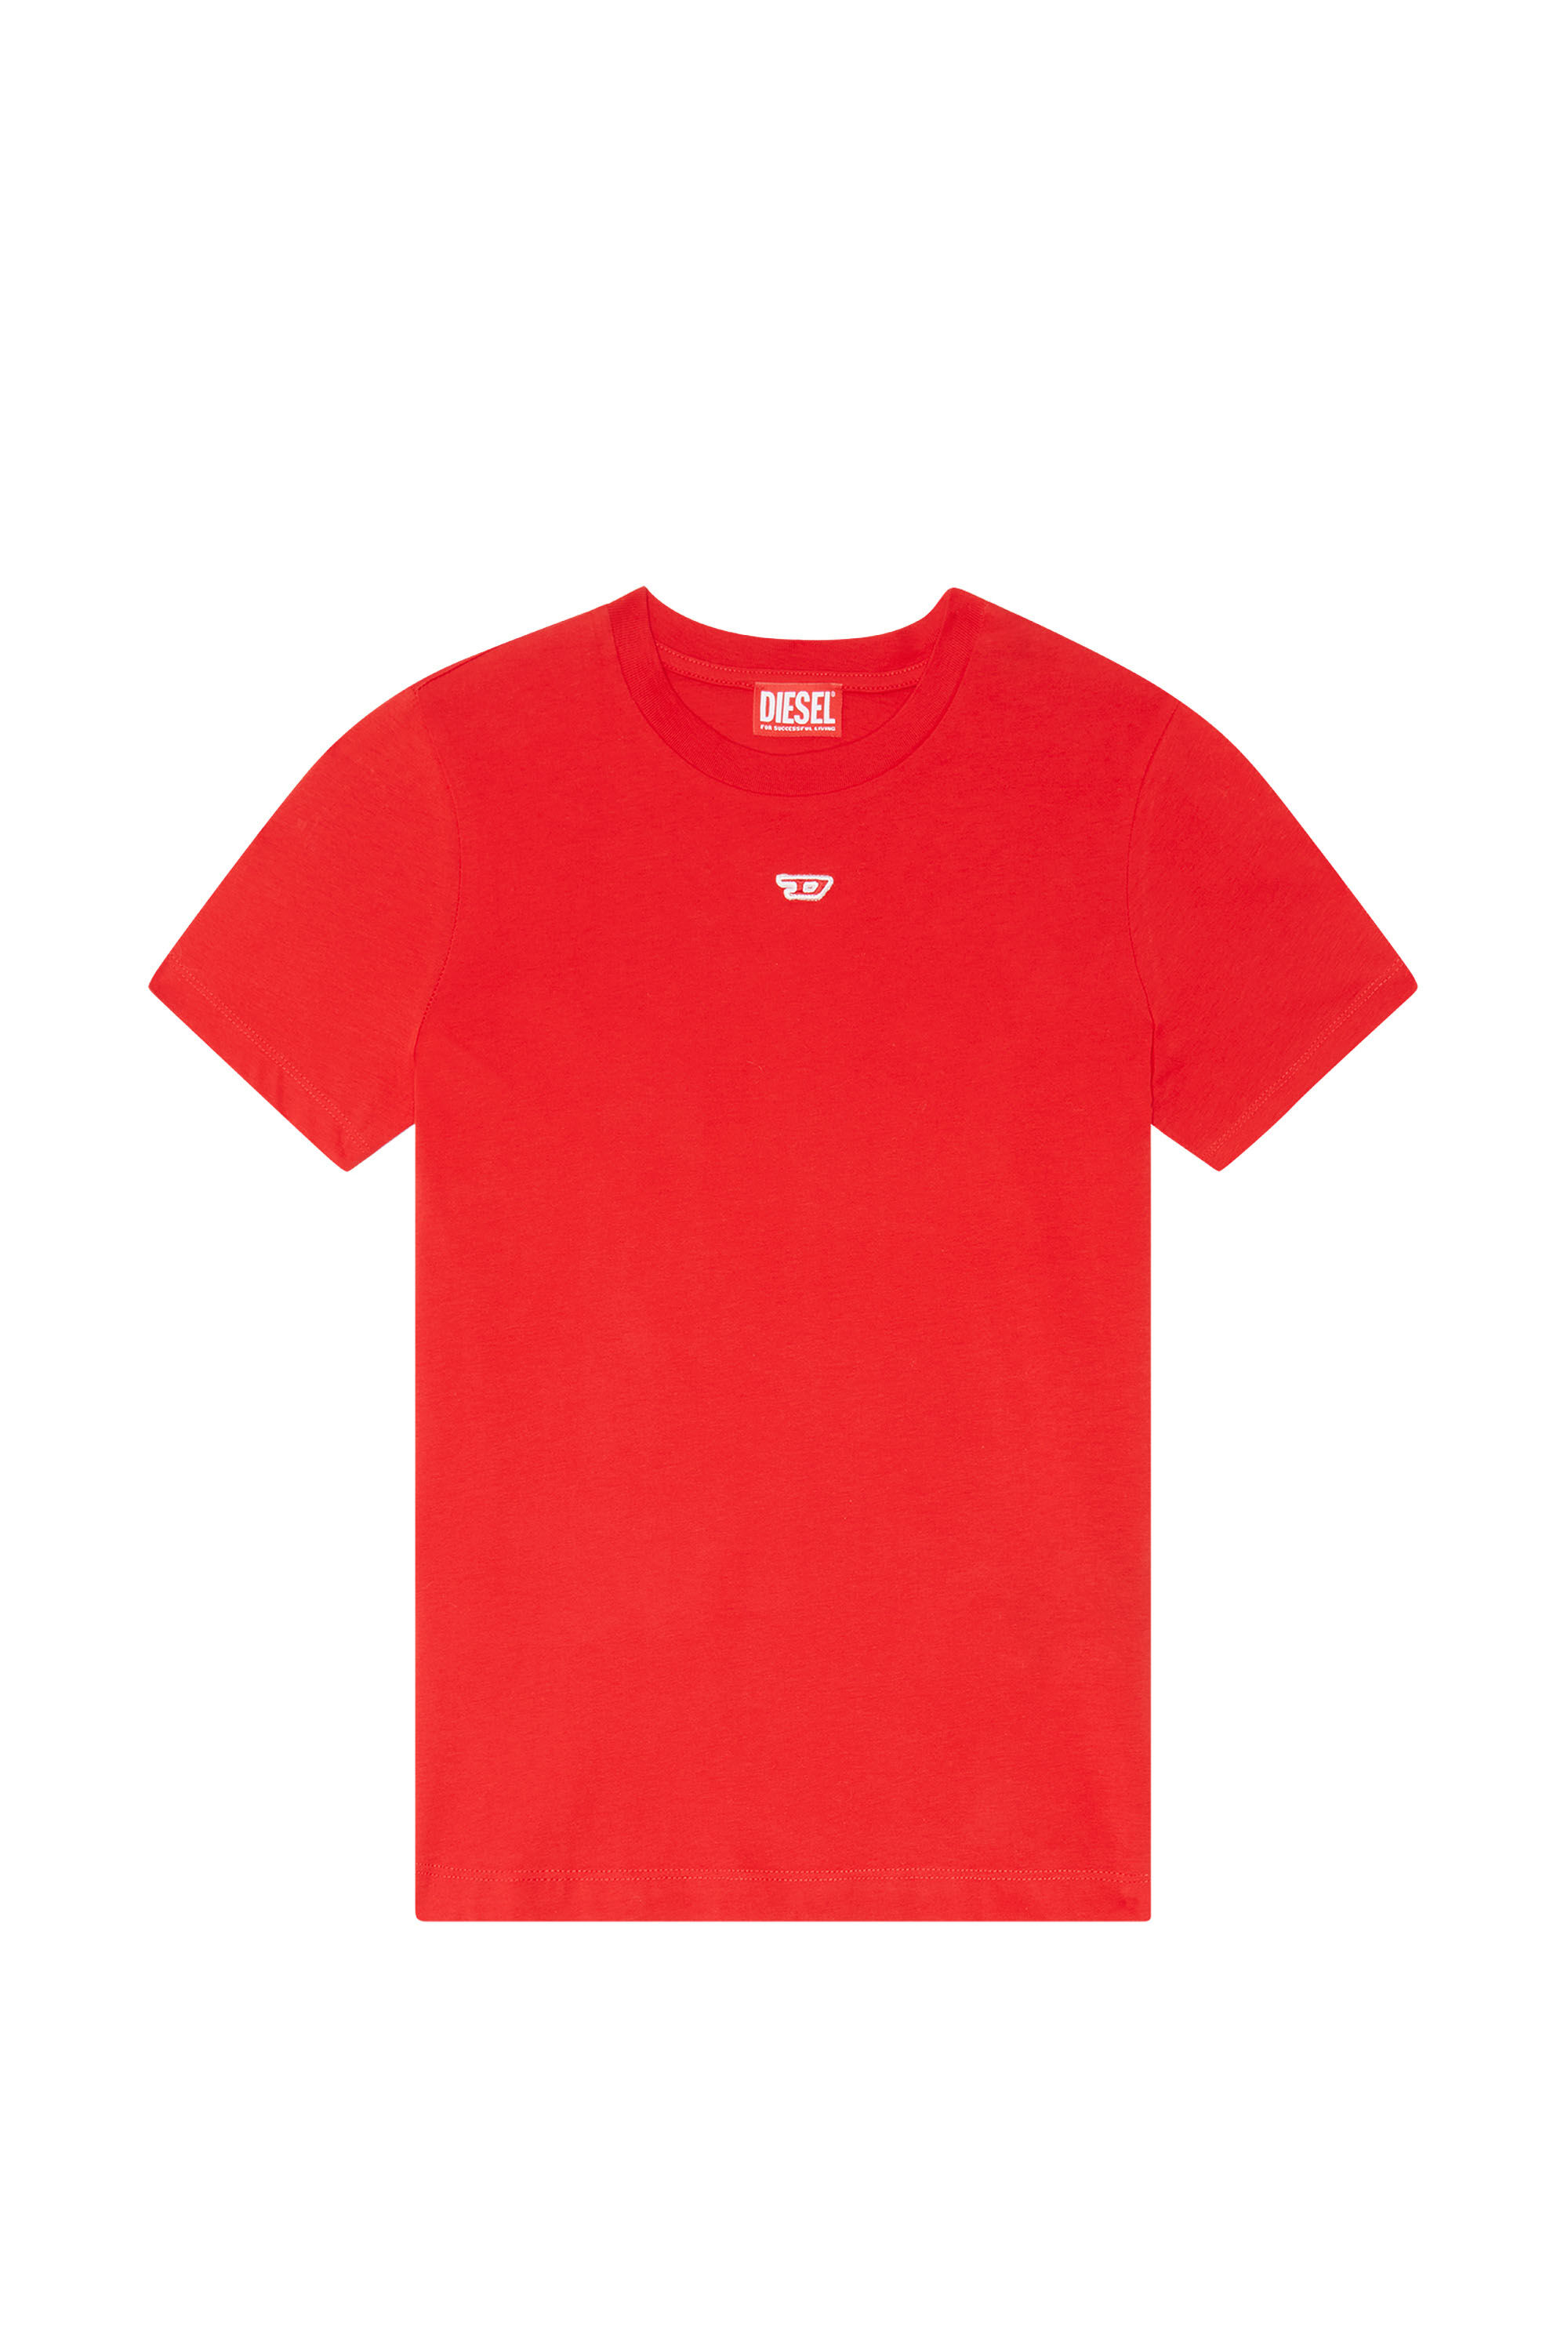 Diesel - T-REG-D, Mujer Camiseta con mini parche con el logotipo in Rojo - Image 2